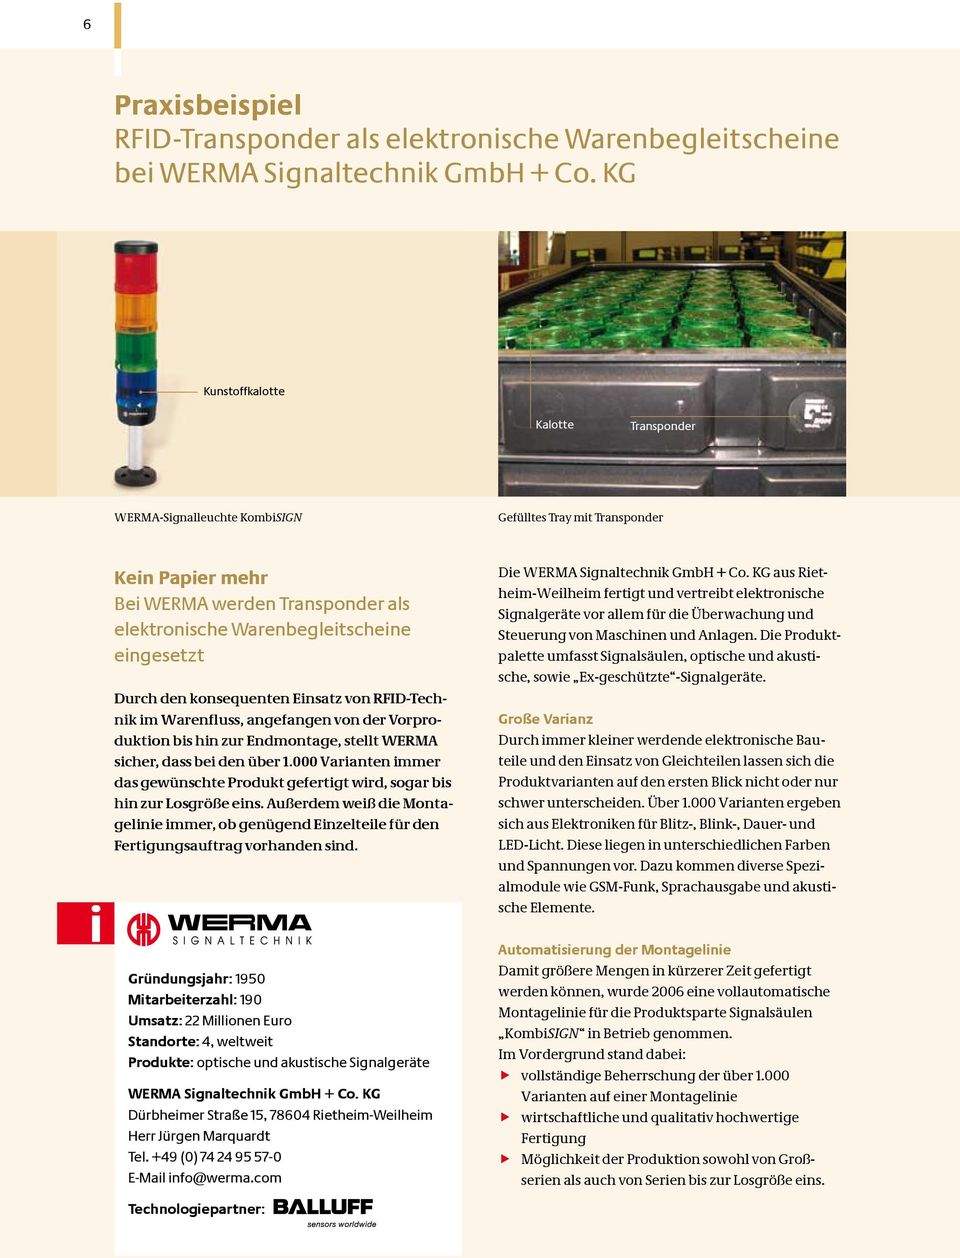 Durch den konsequenten Einsatz von RFID-Technik im Warenfluss, angefangen von der Vorproduktion bis hin zur Endmontage, stellt WERMA sicher, dass bei den über 1.